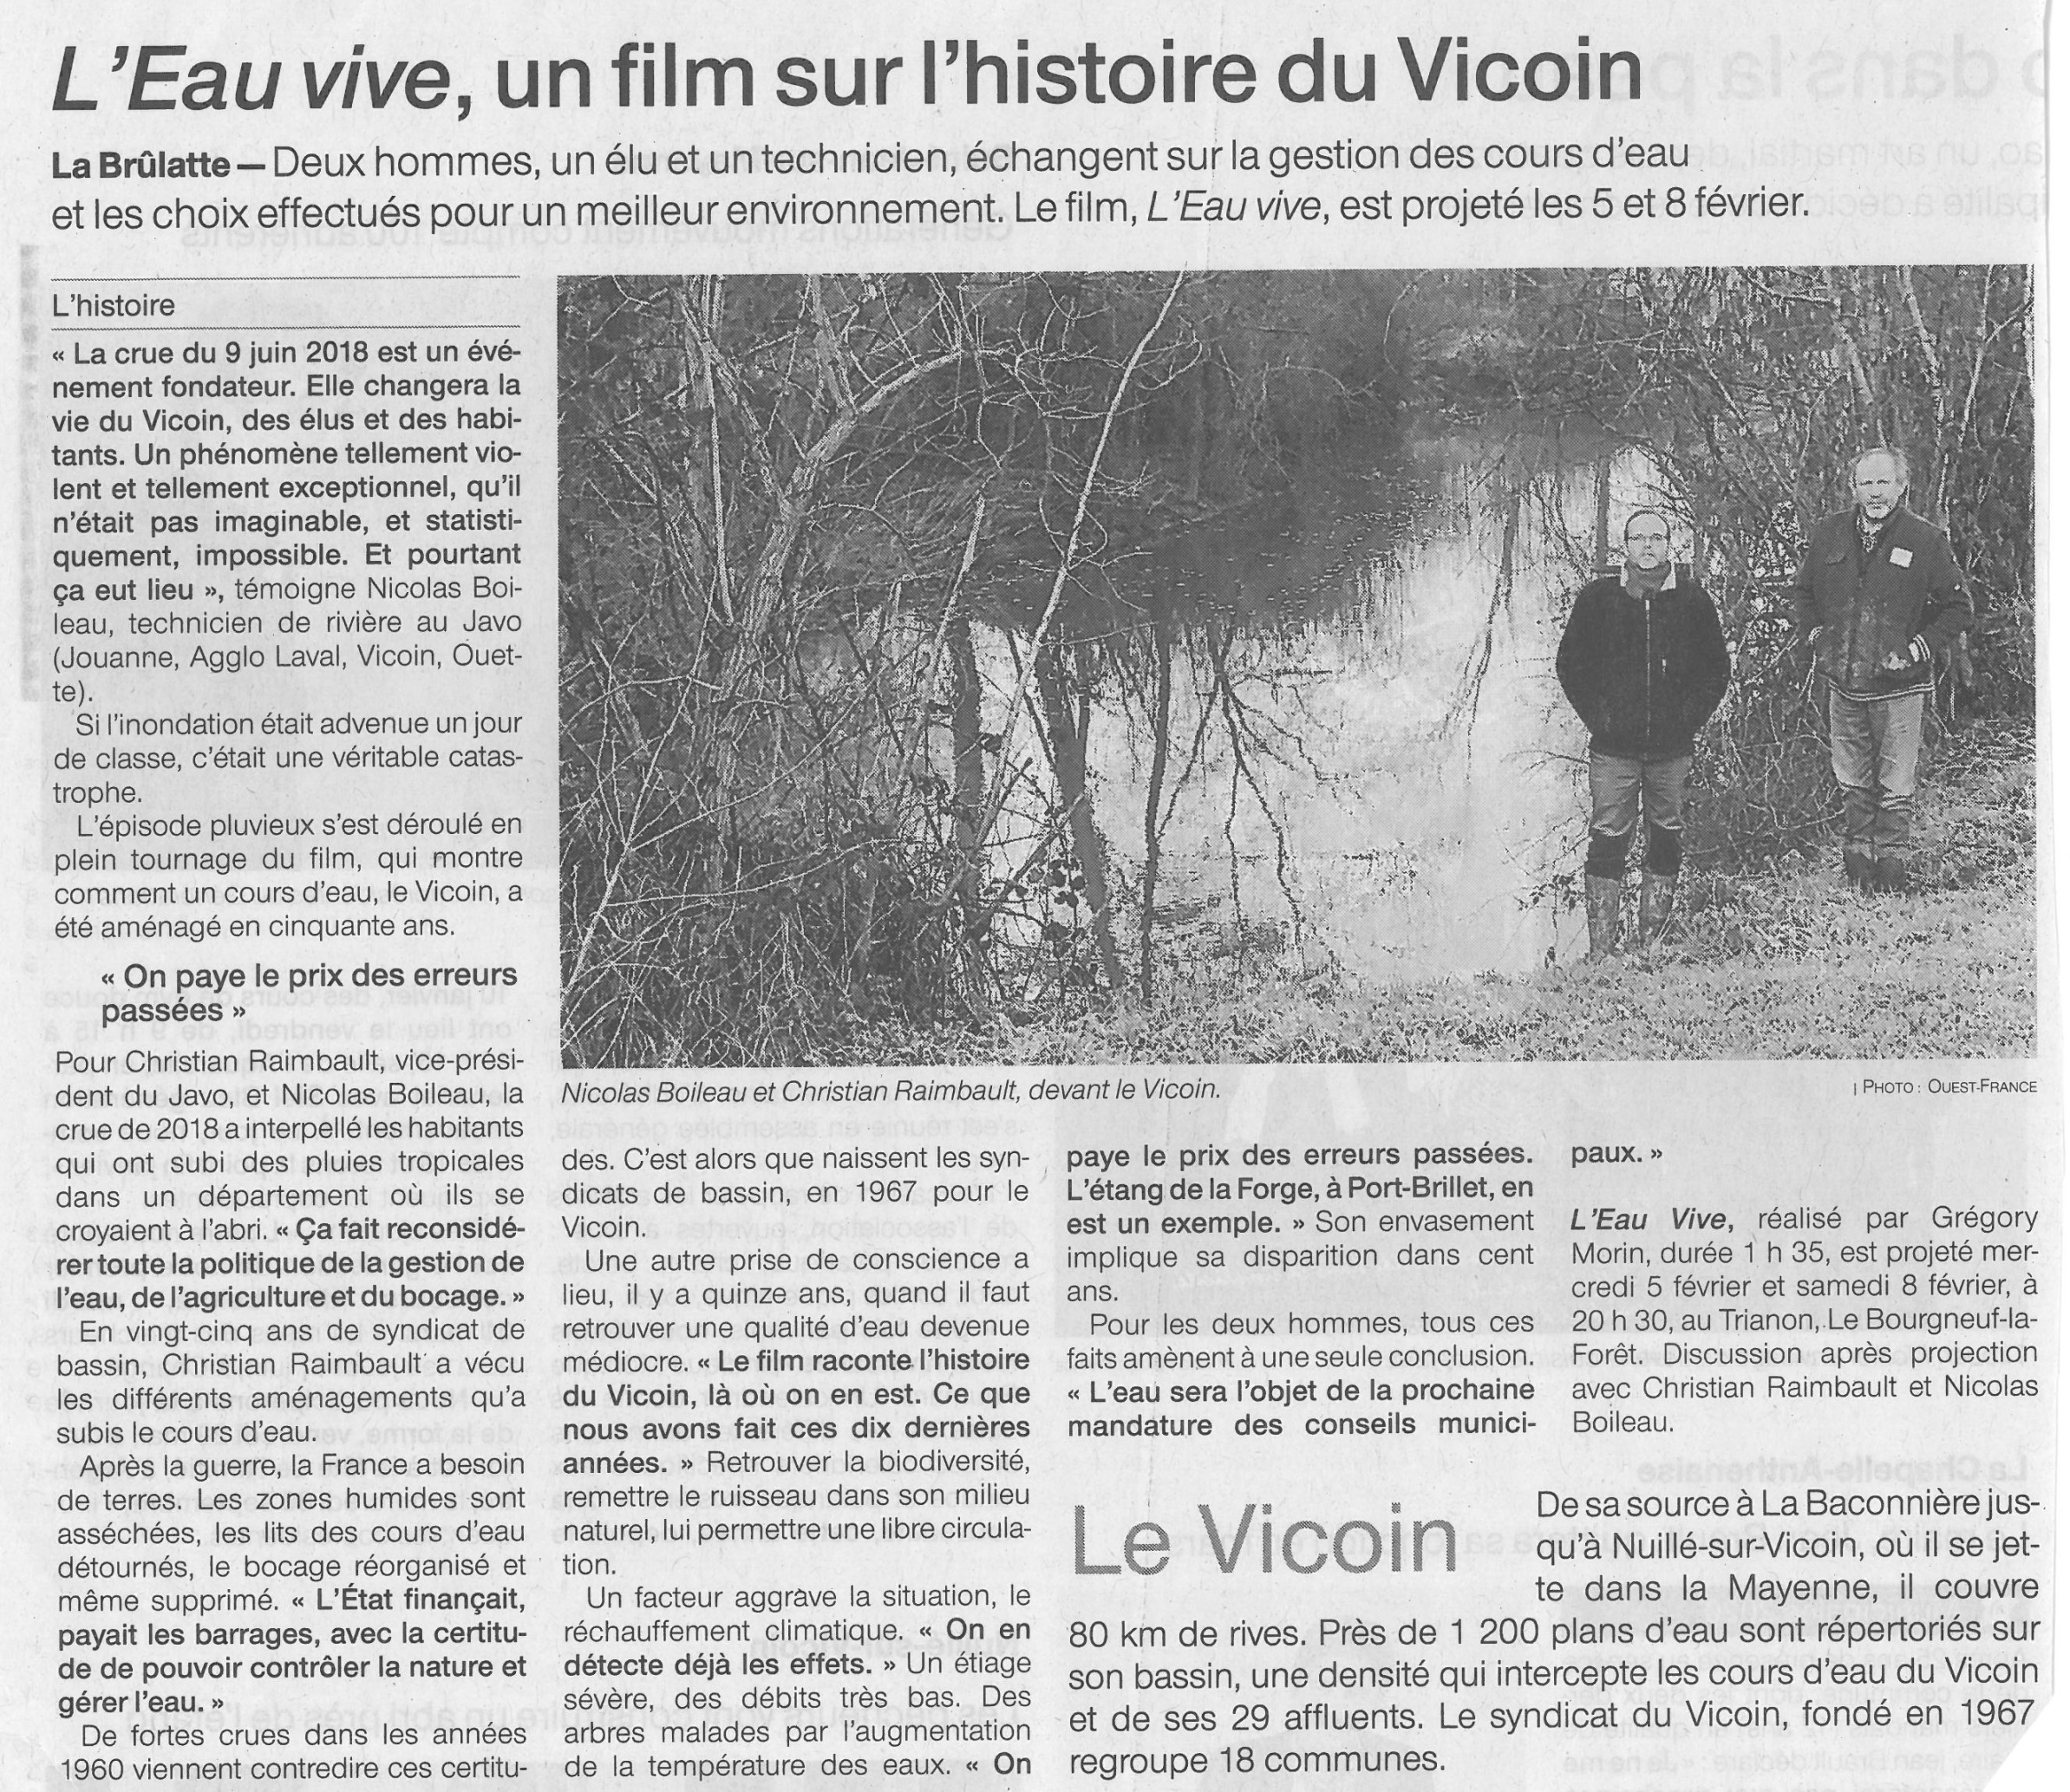 OF du 27/01/2020 - Film documentaire sur le Vicoin